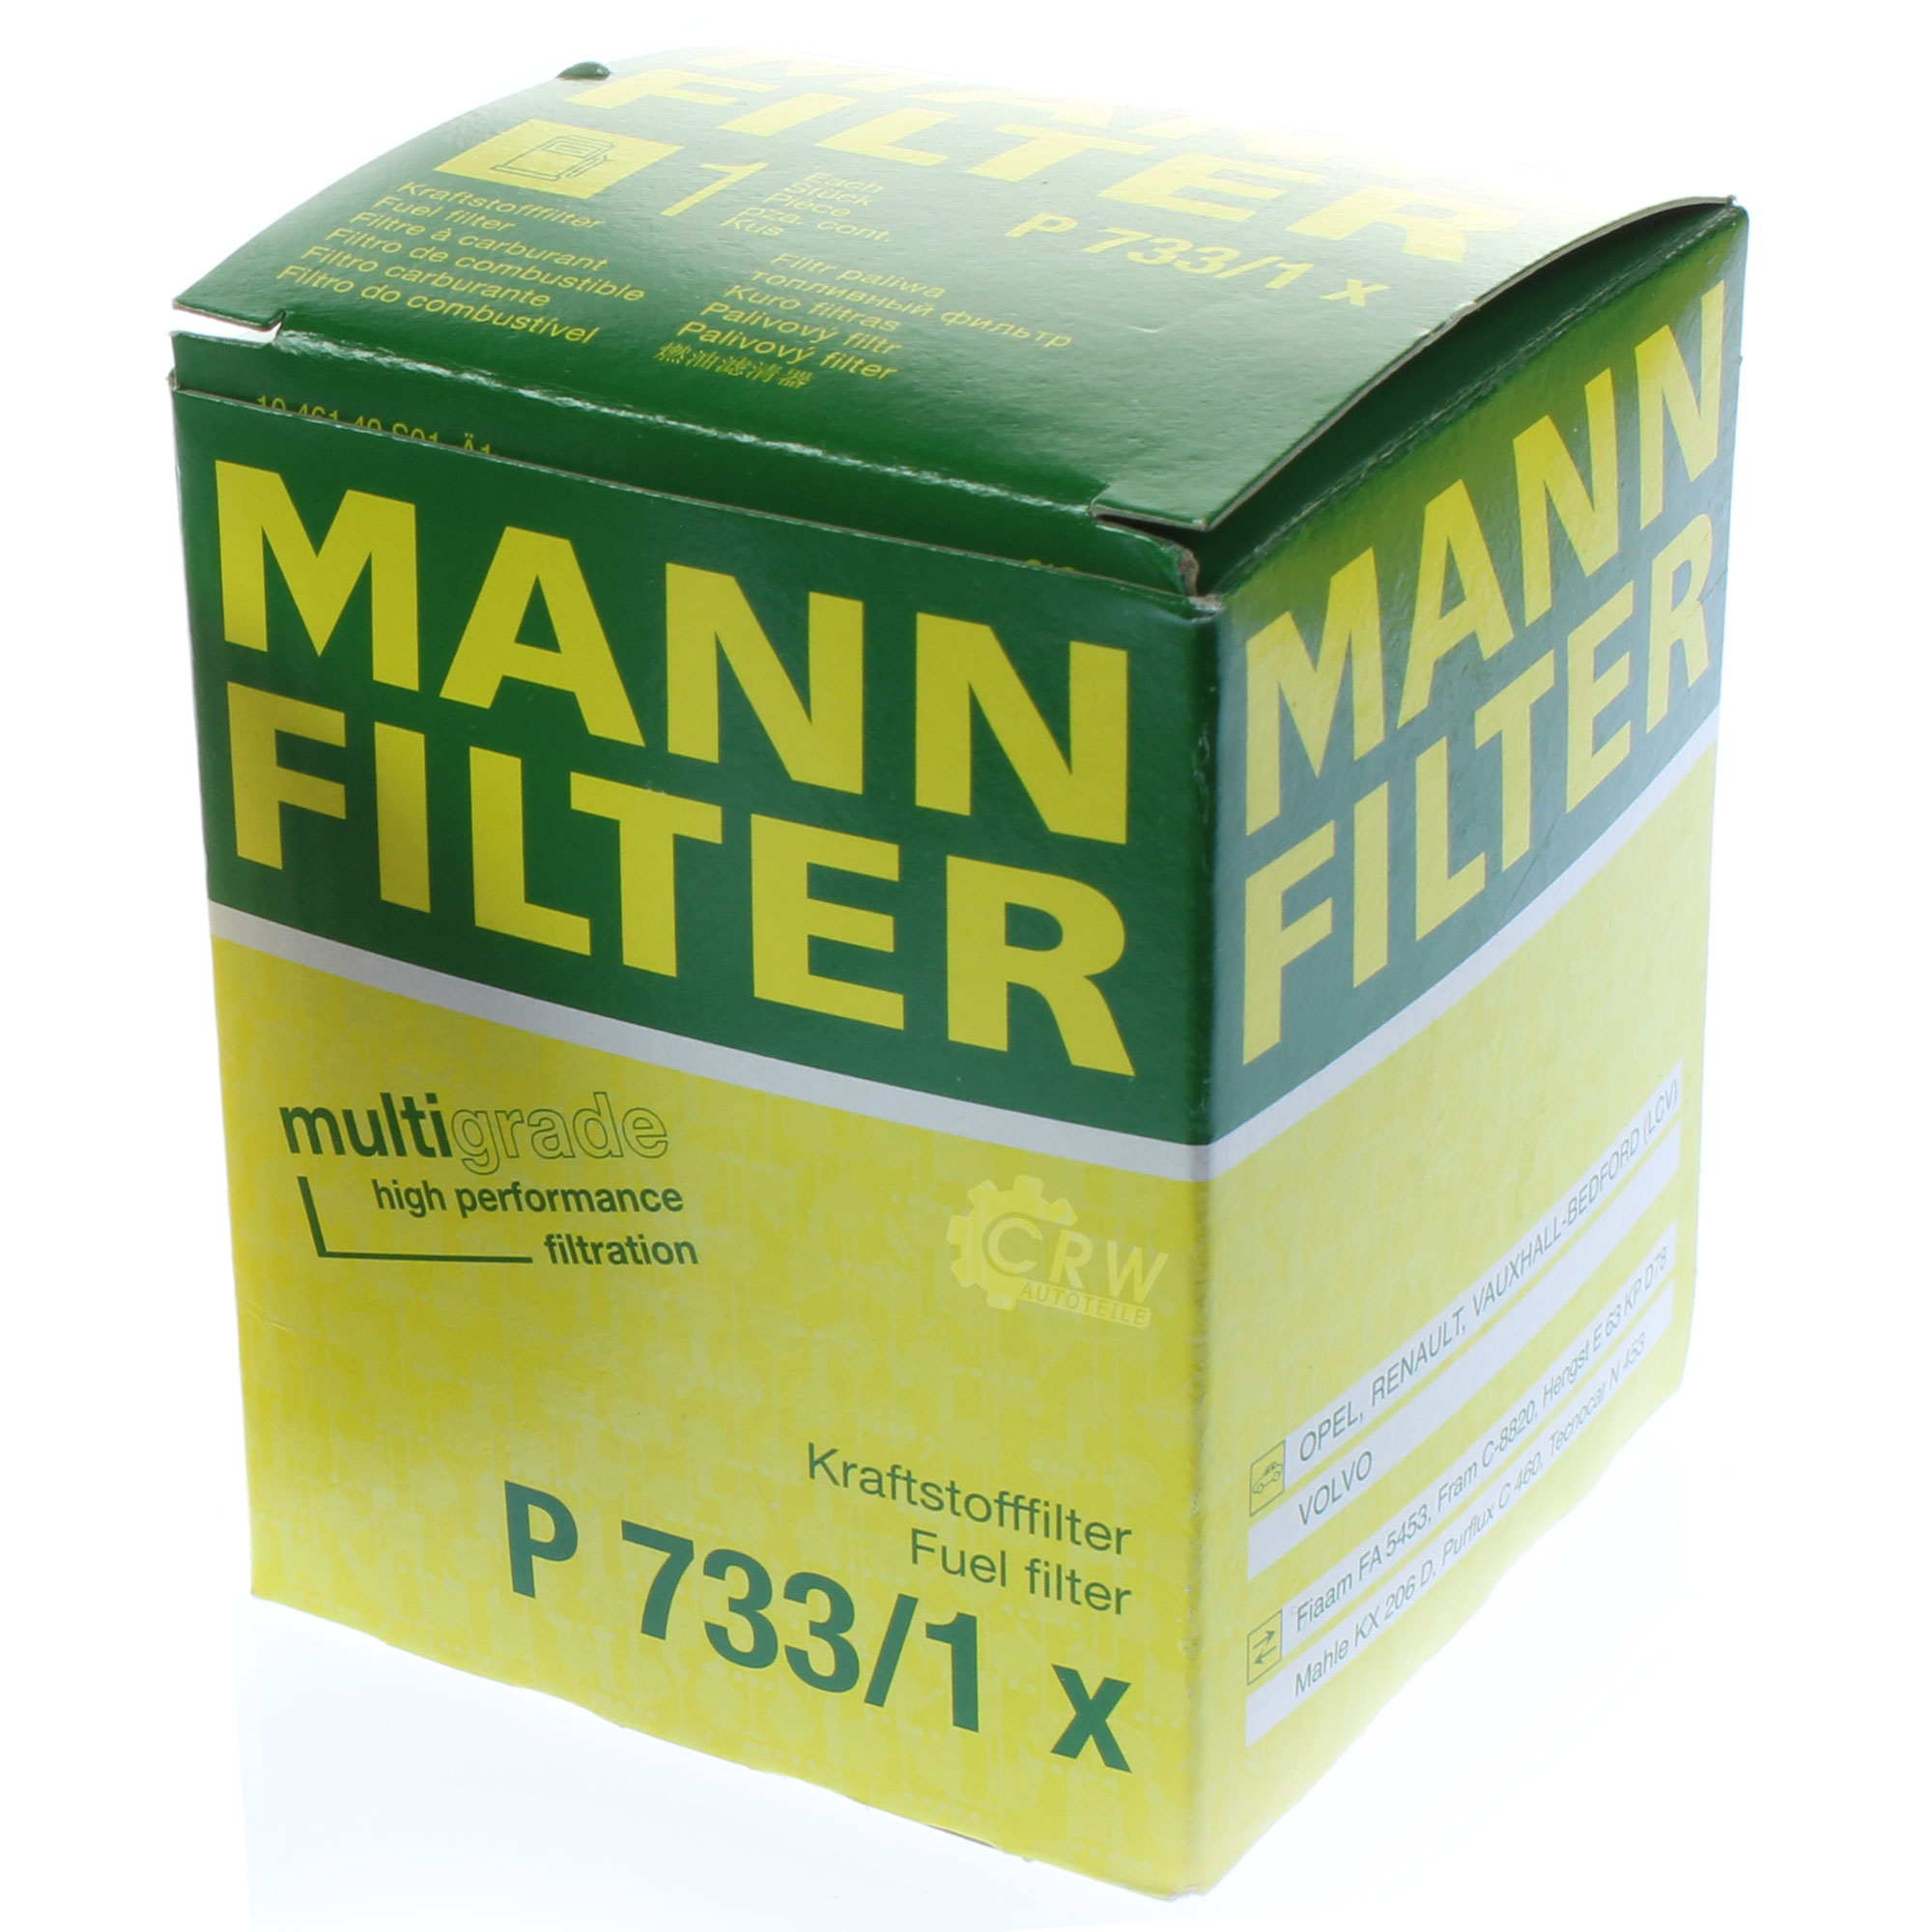 MANN-FILTER Kraftstofffilter P 733/1 x Fuel Filter